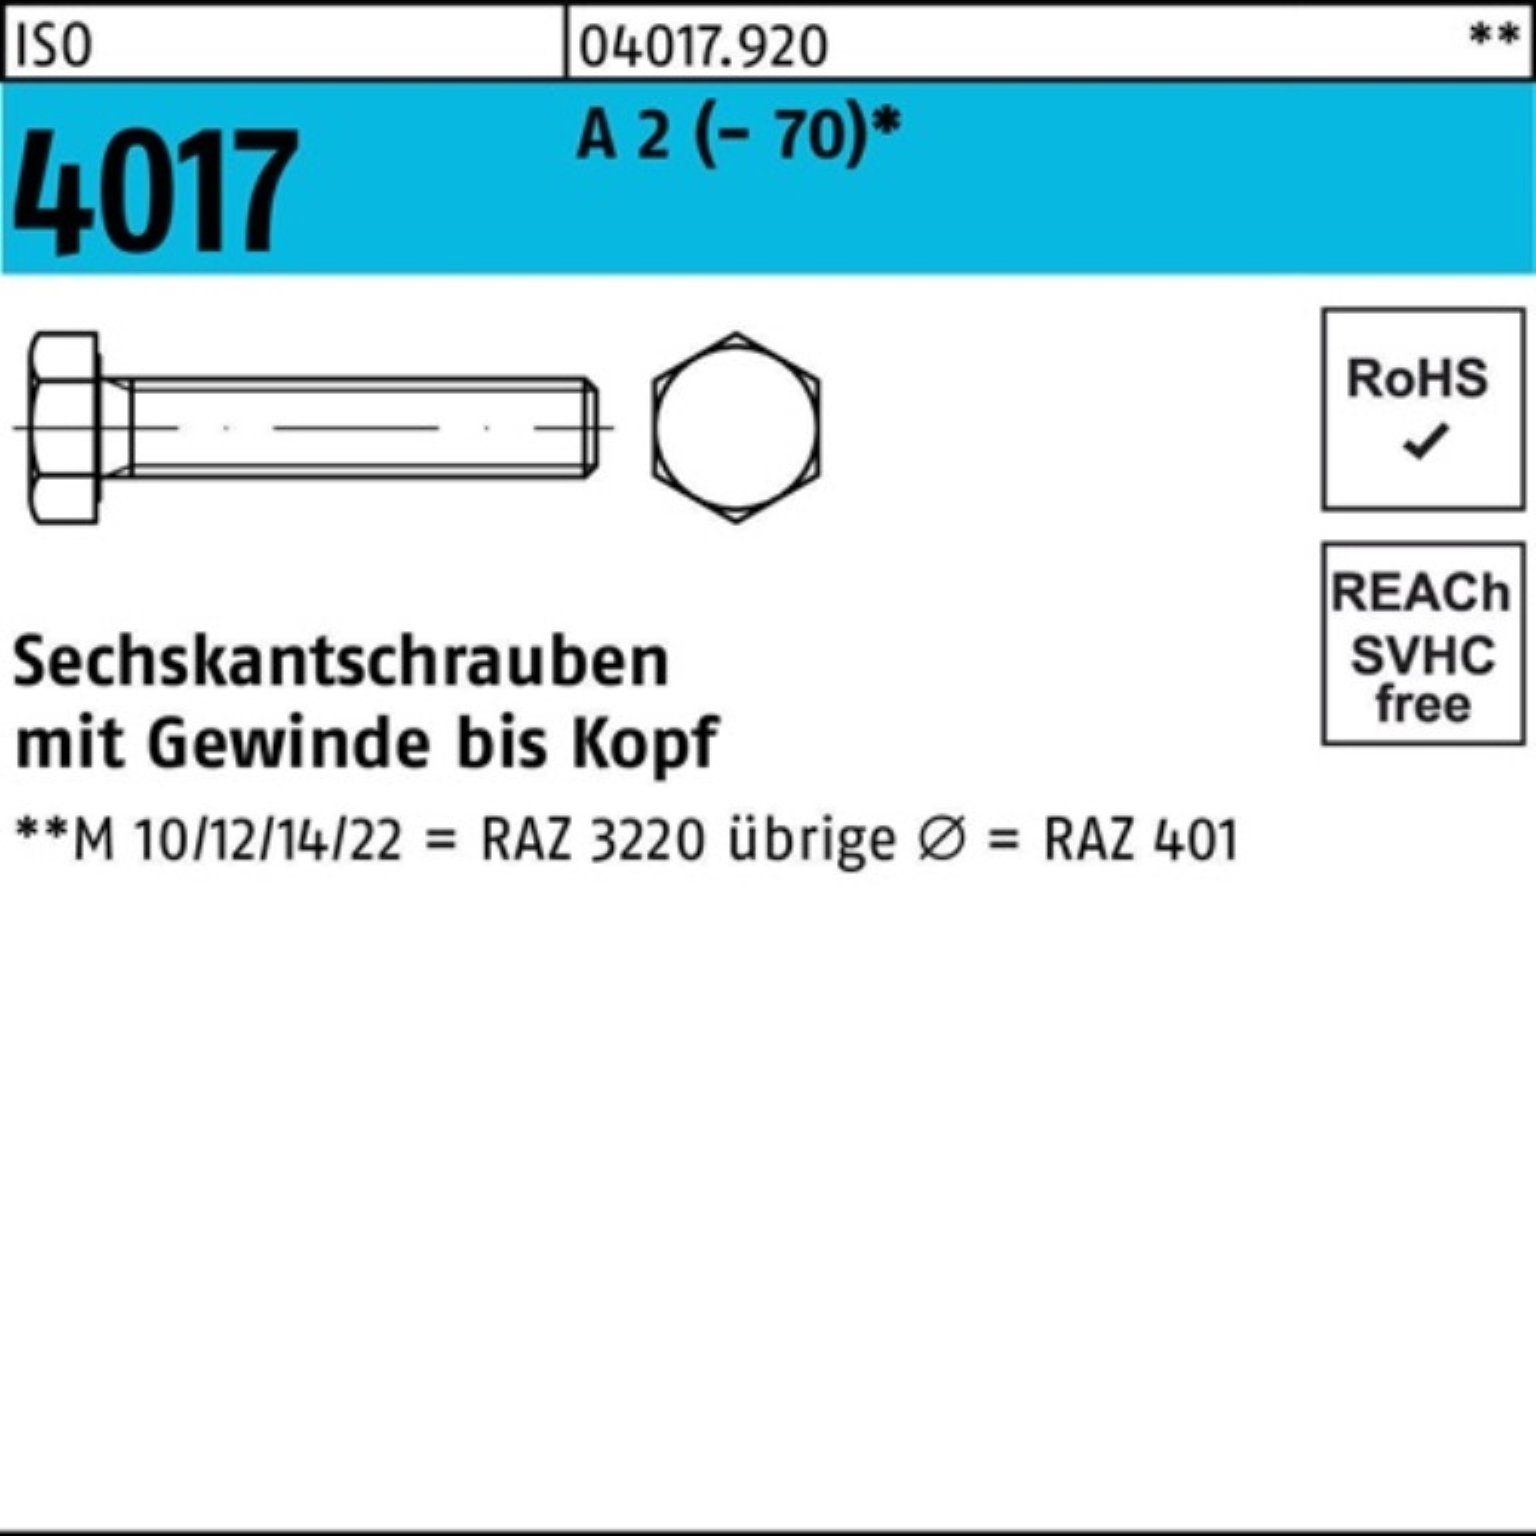 Bufab Sechskantschraube 100er Pack Sechskantschraube ISO 4017 VG M22x 40 A 2 (70) 25 Stück